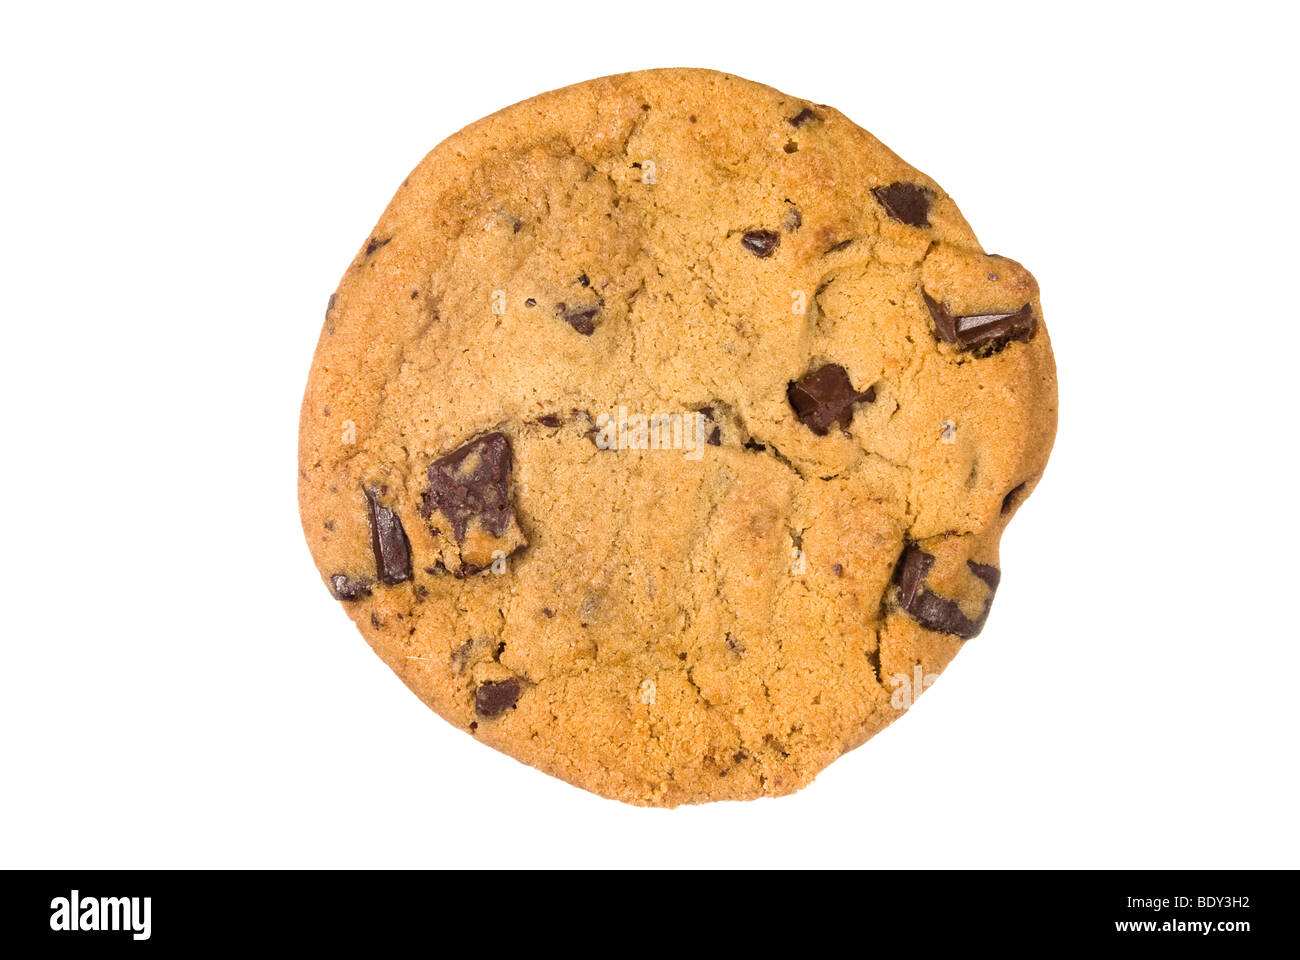 Un seul biscuit aux brisures de chocolat d'une boulangerie isolé sur un fond blanc. Banque D'Images